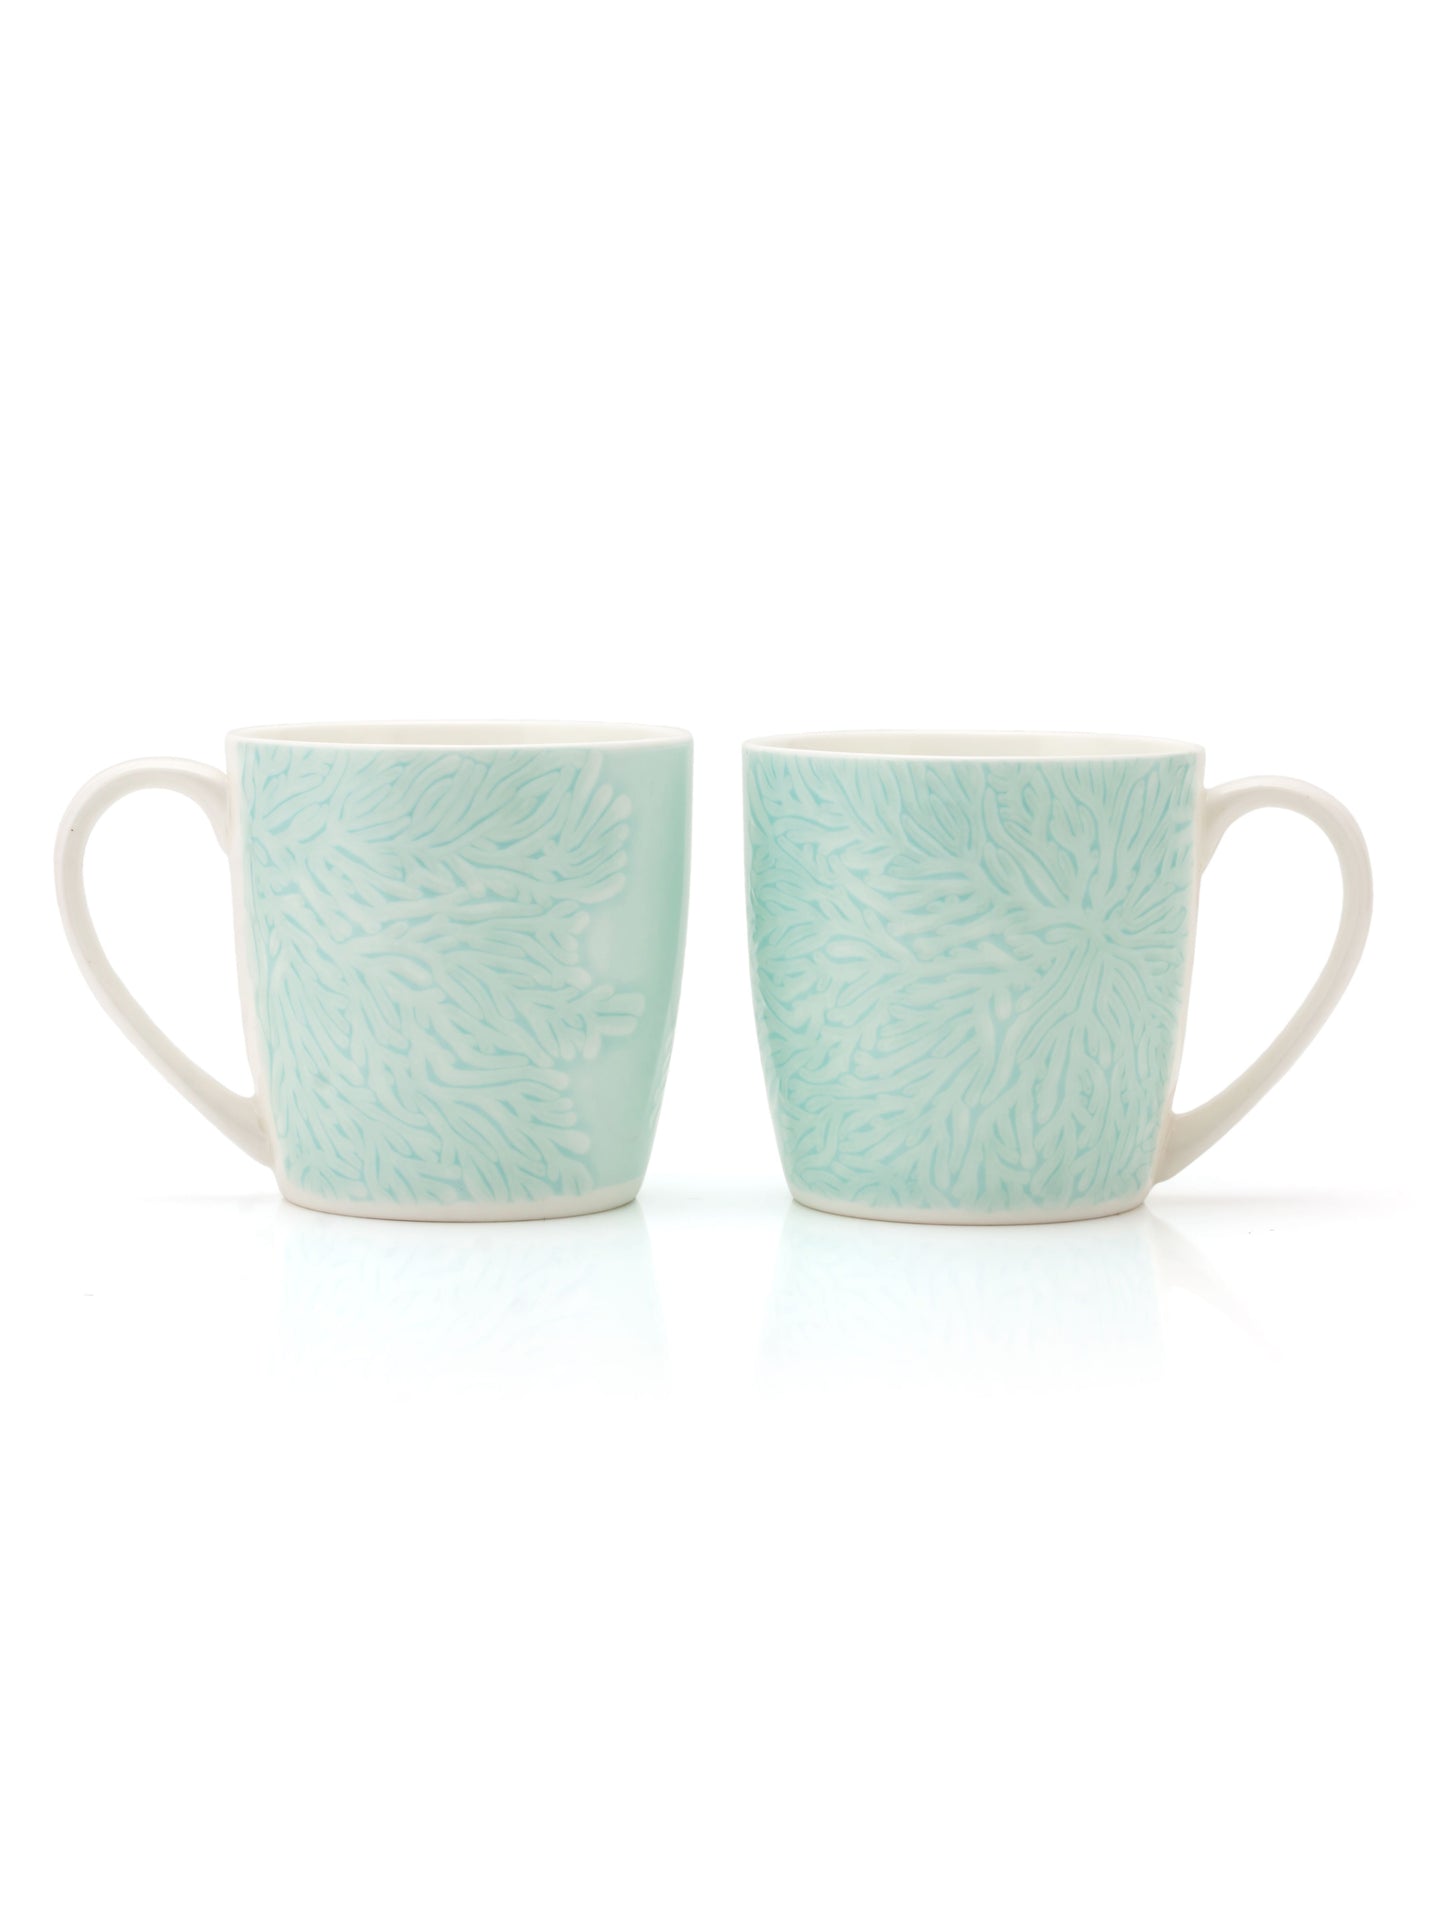 JCPL Alton Vanilla Coffee & Tea Mug Set of 6 (V410)